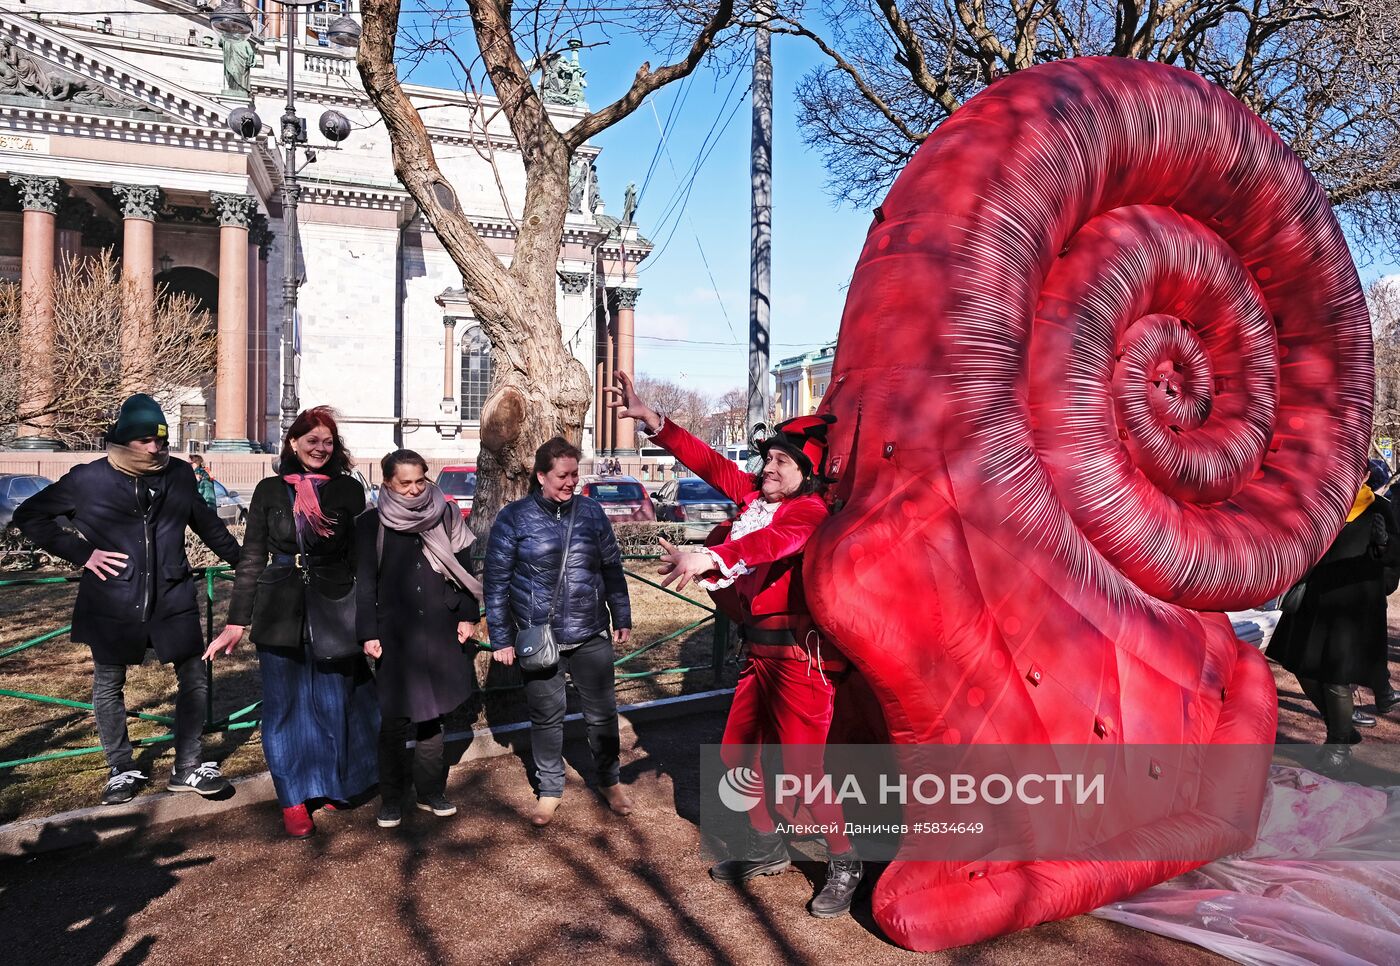  Гигантская улитка на Исаакиевской площади в Санкт-Петербурге